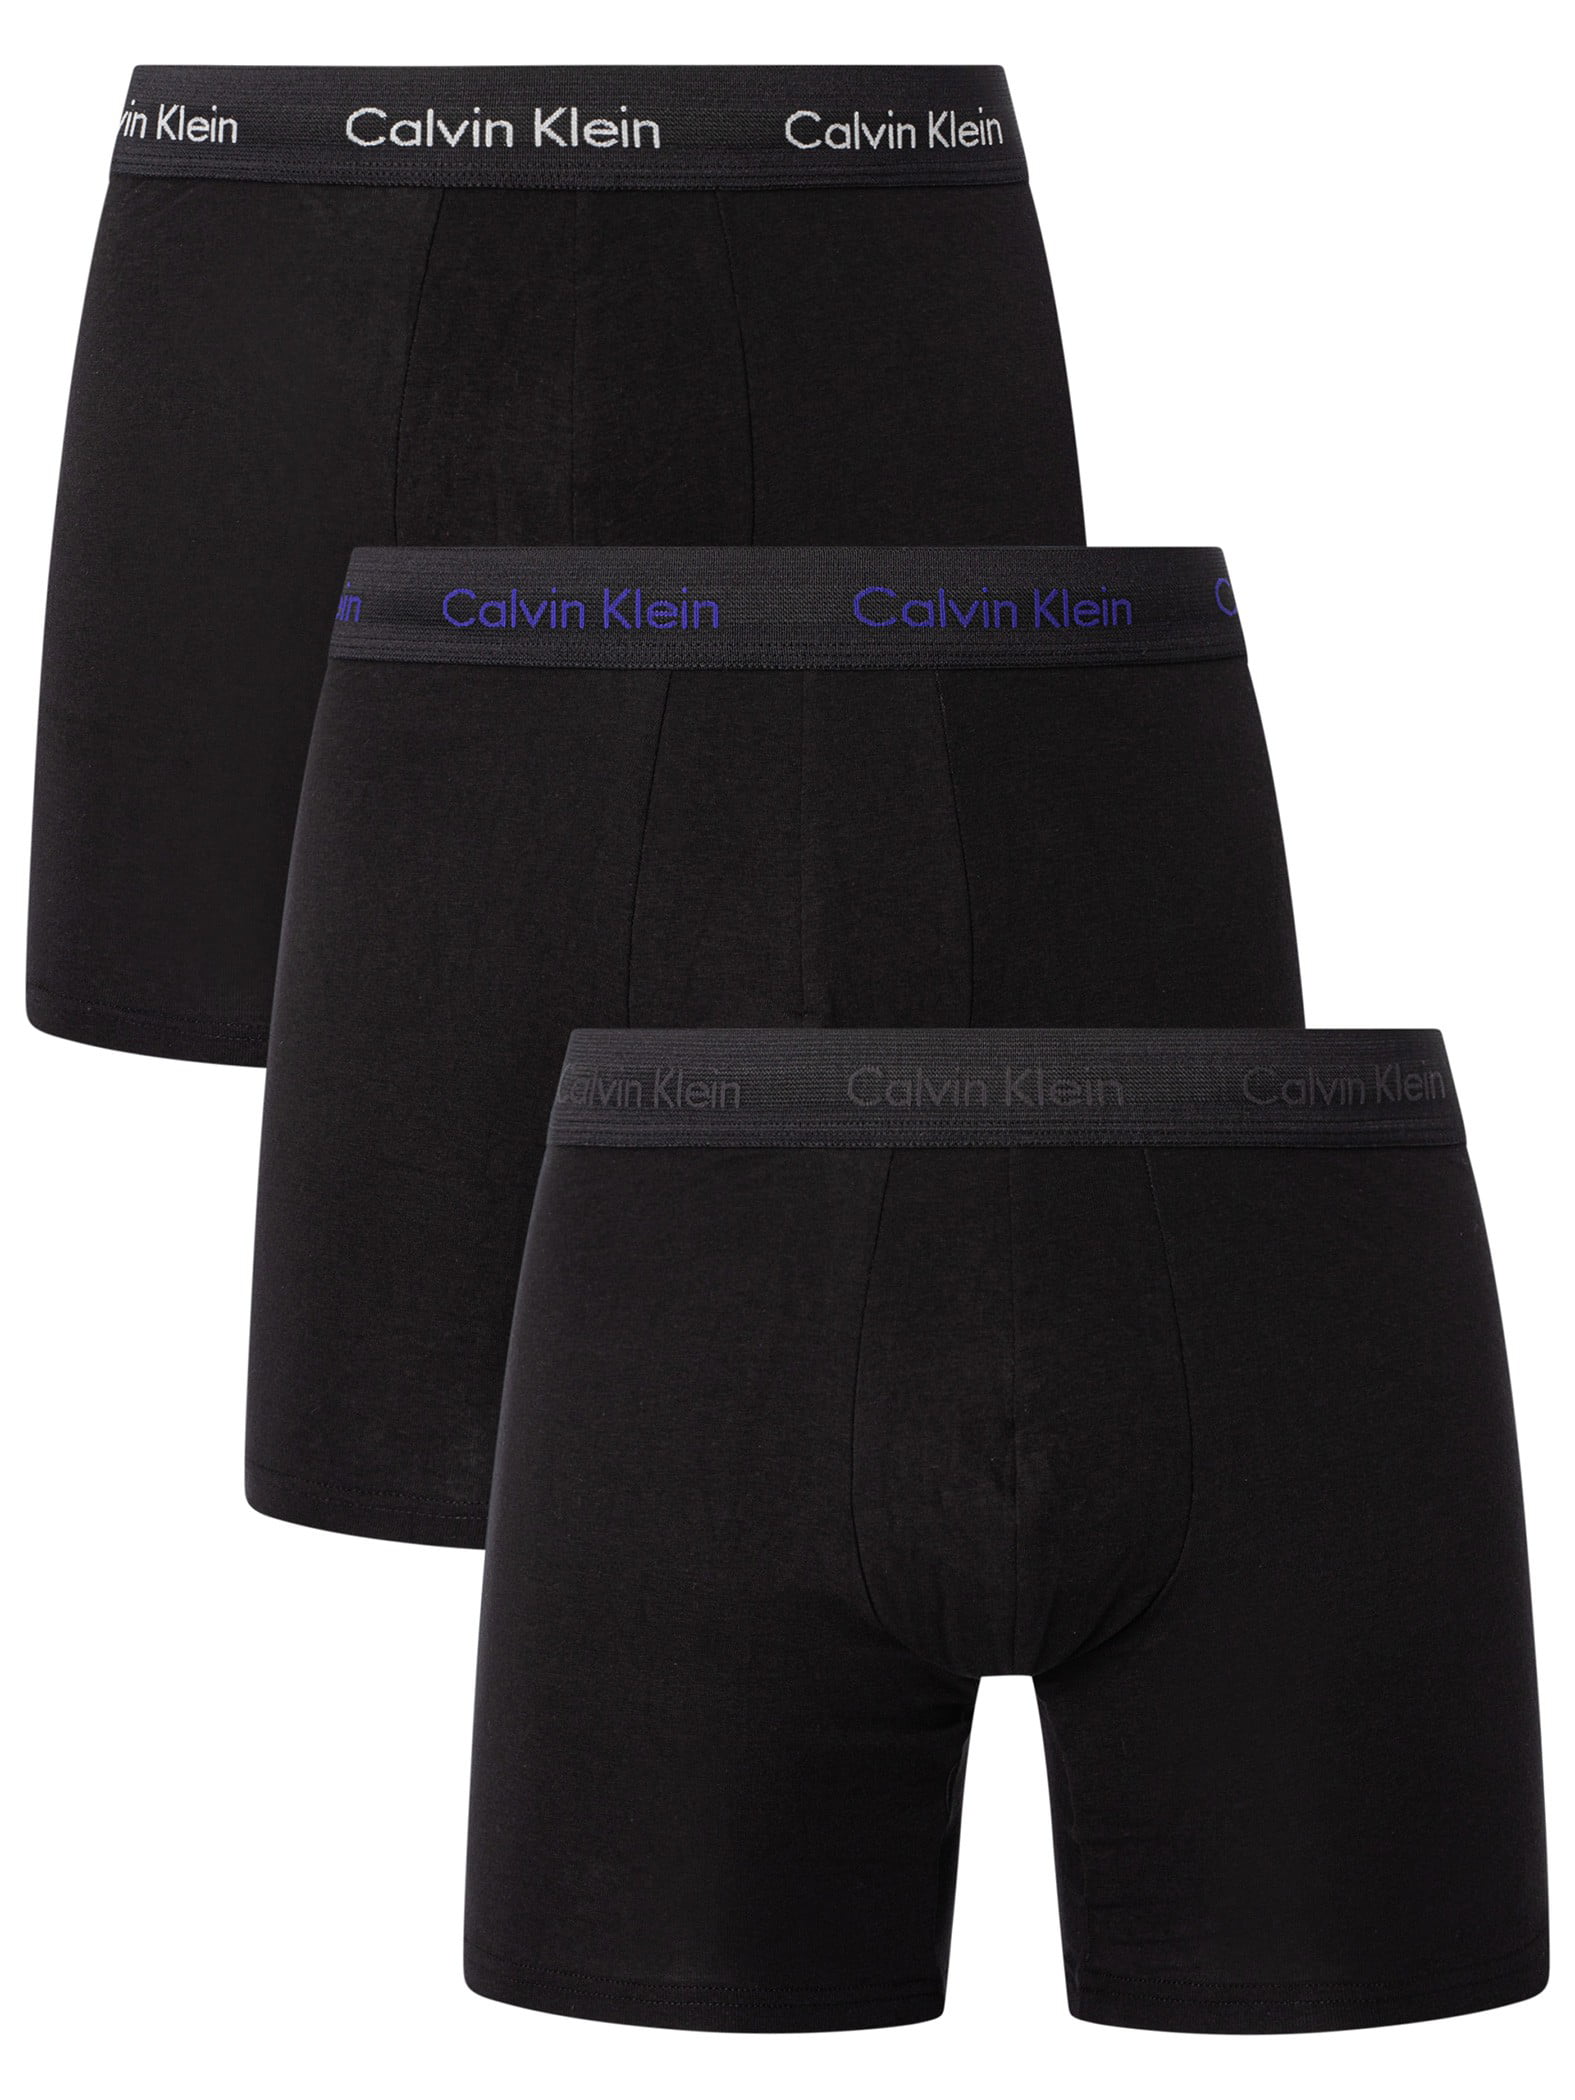 Calvin Klein 3 Pack Boxer Briefs, Black